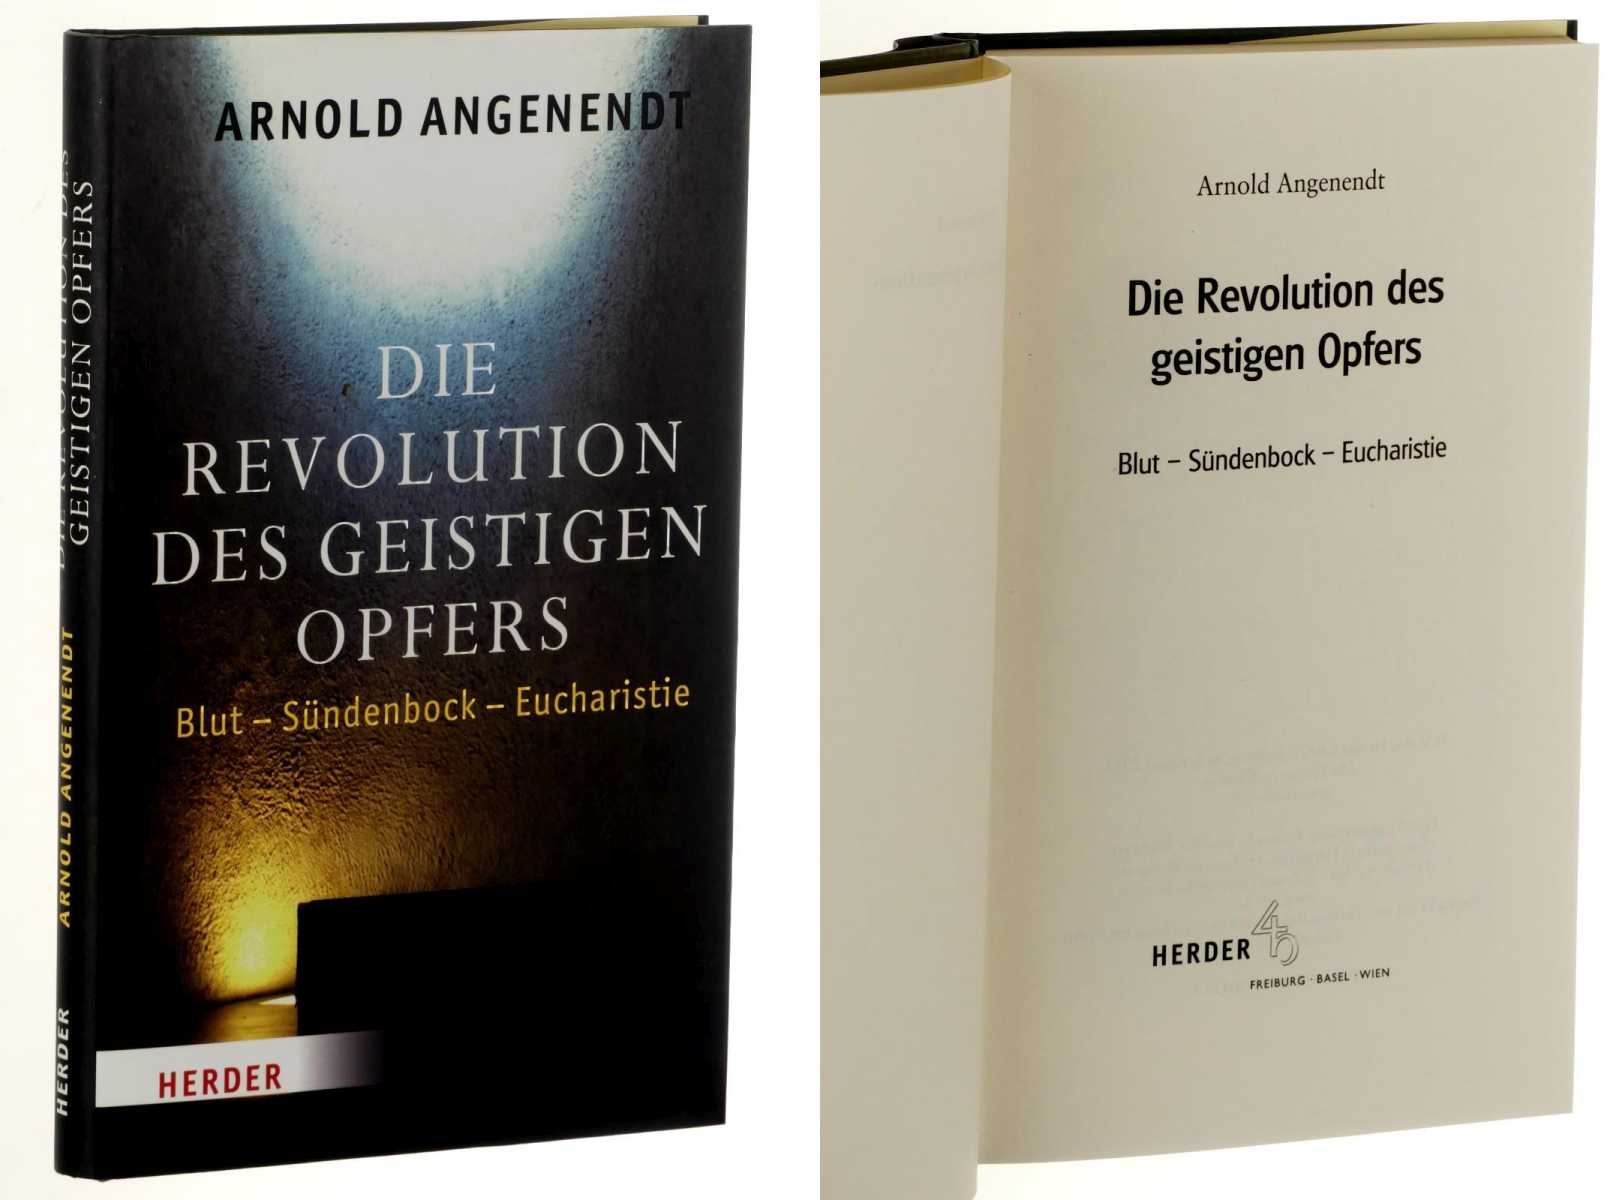 Angenendt, Arnold:  Die Revolution des geistigen Opfers. Blut - Sündenbock - Eucharistie. 